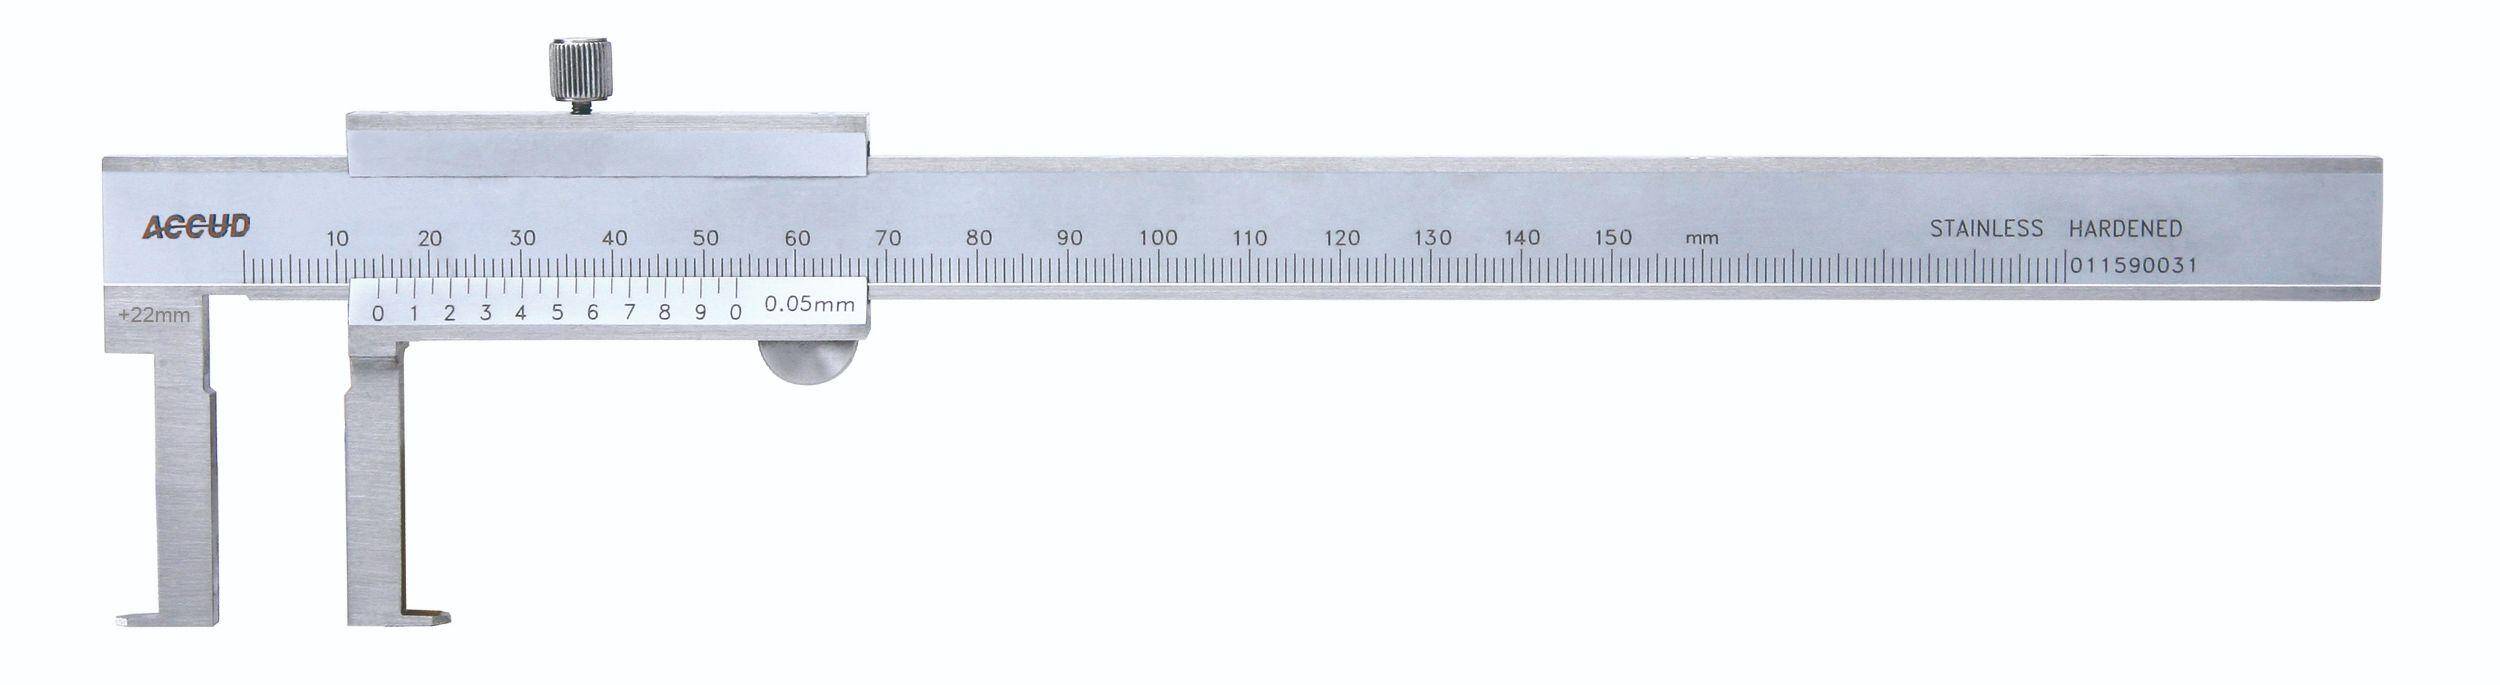 ACCUD suwmiarka analogowa 22-150/0.02 mm do pomiarów wewnętrznych + świadectwo wzorcowania 145-006-11 WZORC (Zdjęcie 3)